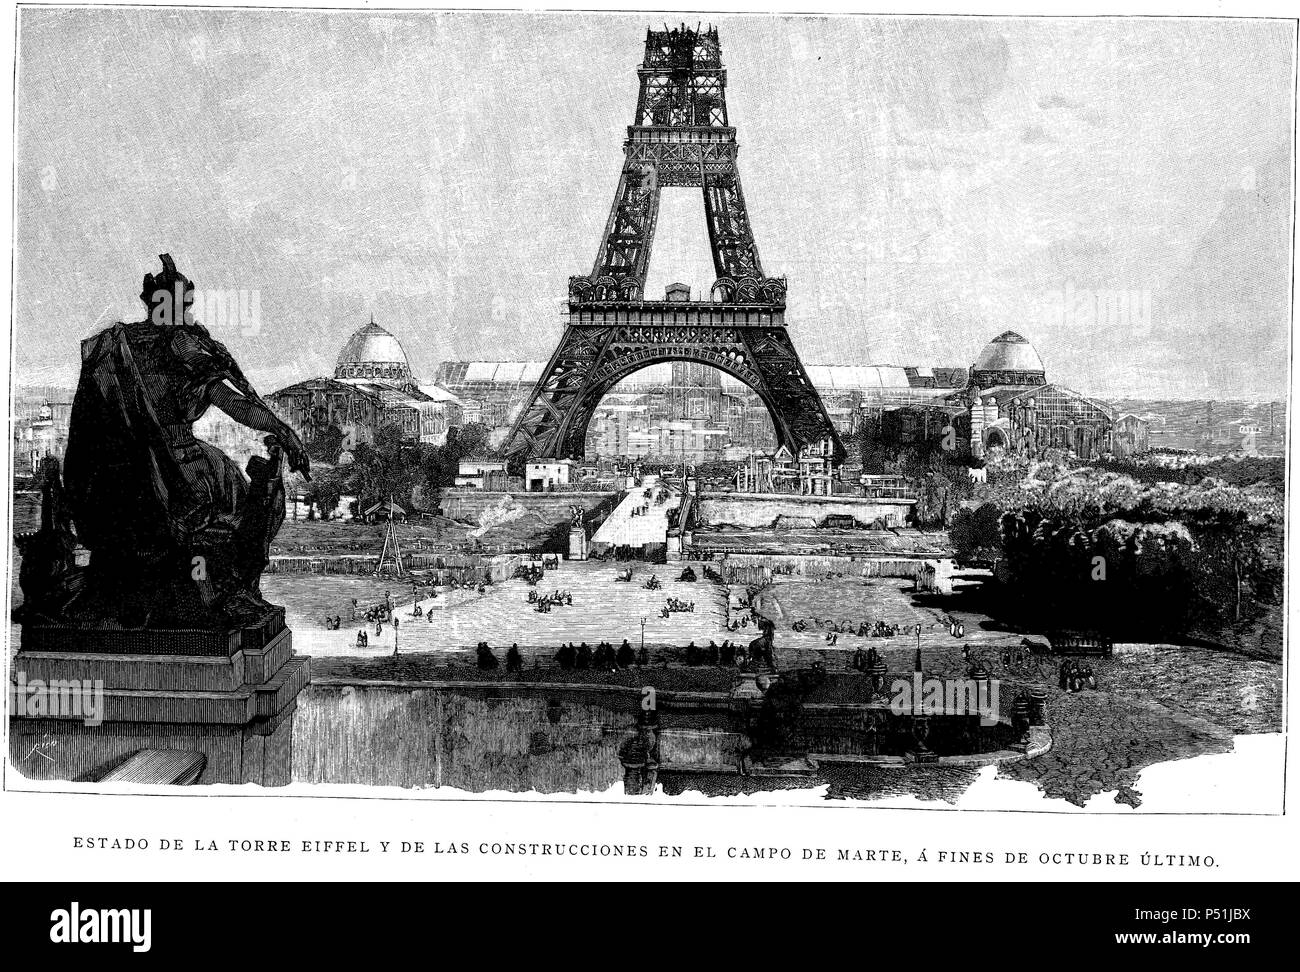 Francia. Siglo XIX. Vista de los trabajos de construccion de la Torre Eiffel desde el Campo de Marte. Paris. Grabado de 1888. Stockfoto